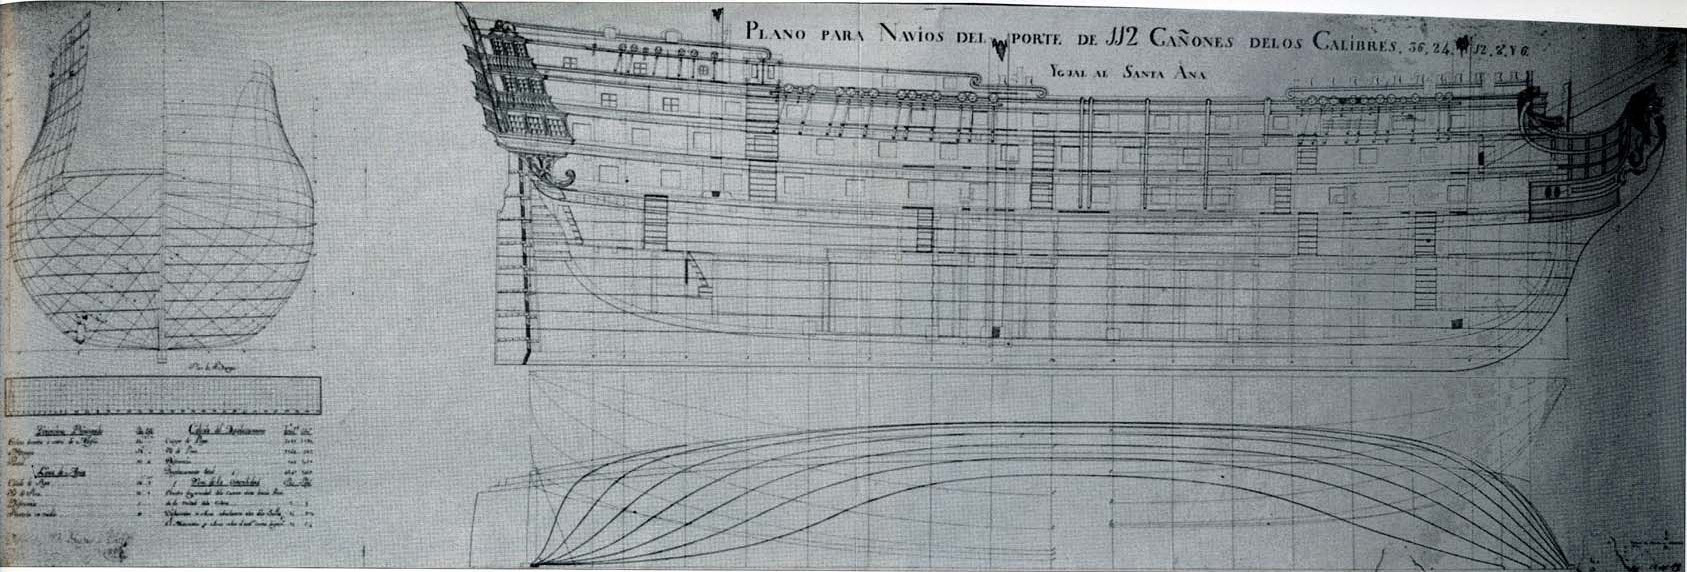 Plan d'un navire de 112 canons, comme le Santa Ana, qui transportait à la bataille de Trafalgar 104 canons et 22 obusiers.